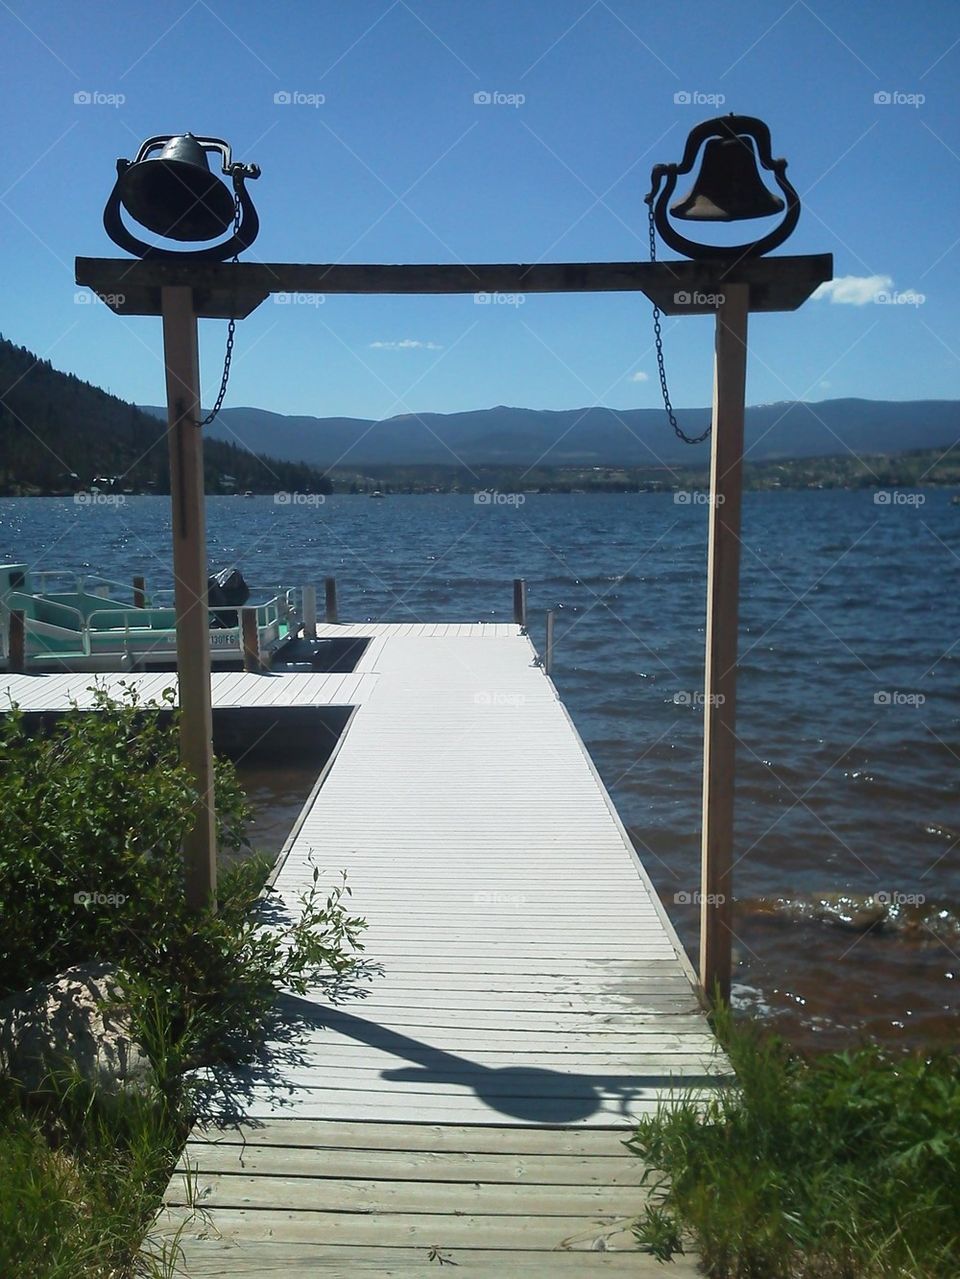 bells at the lake